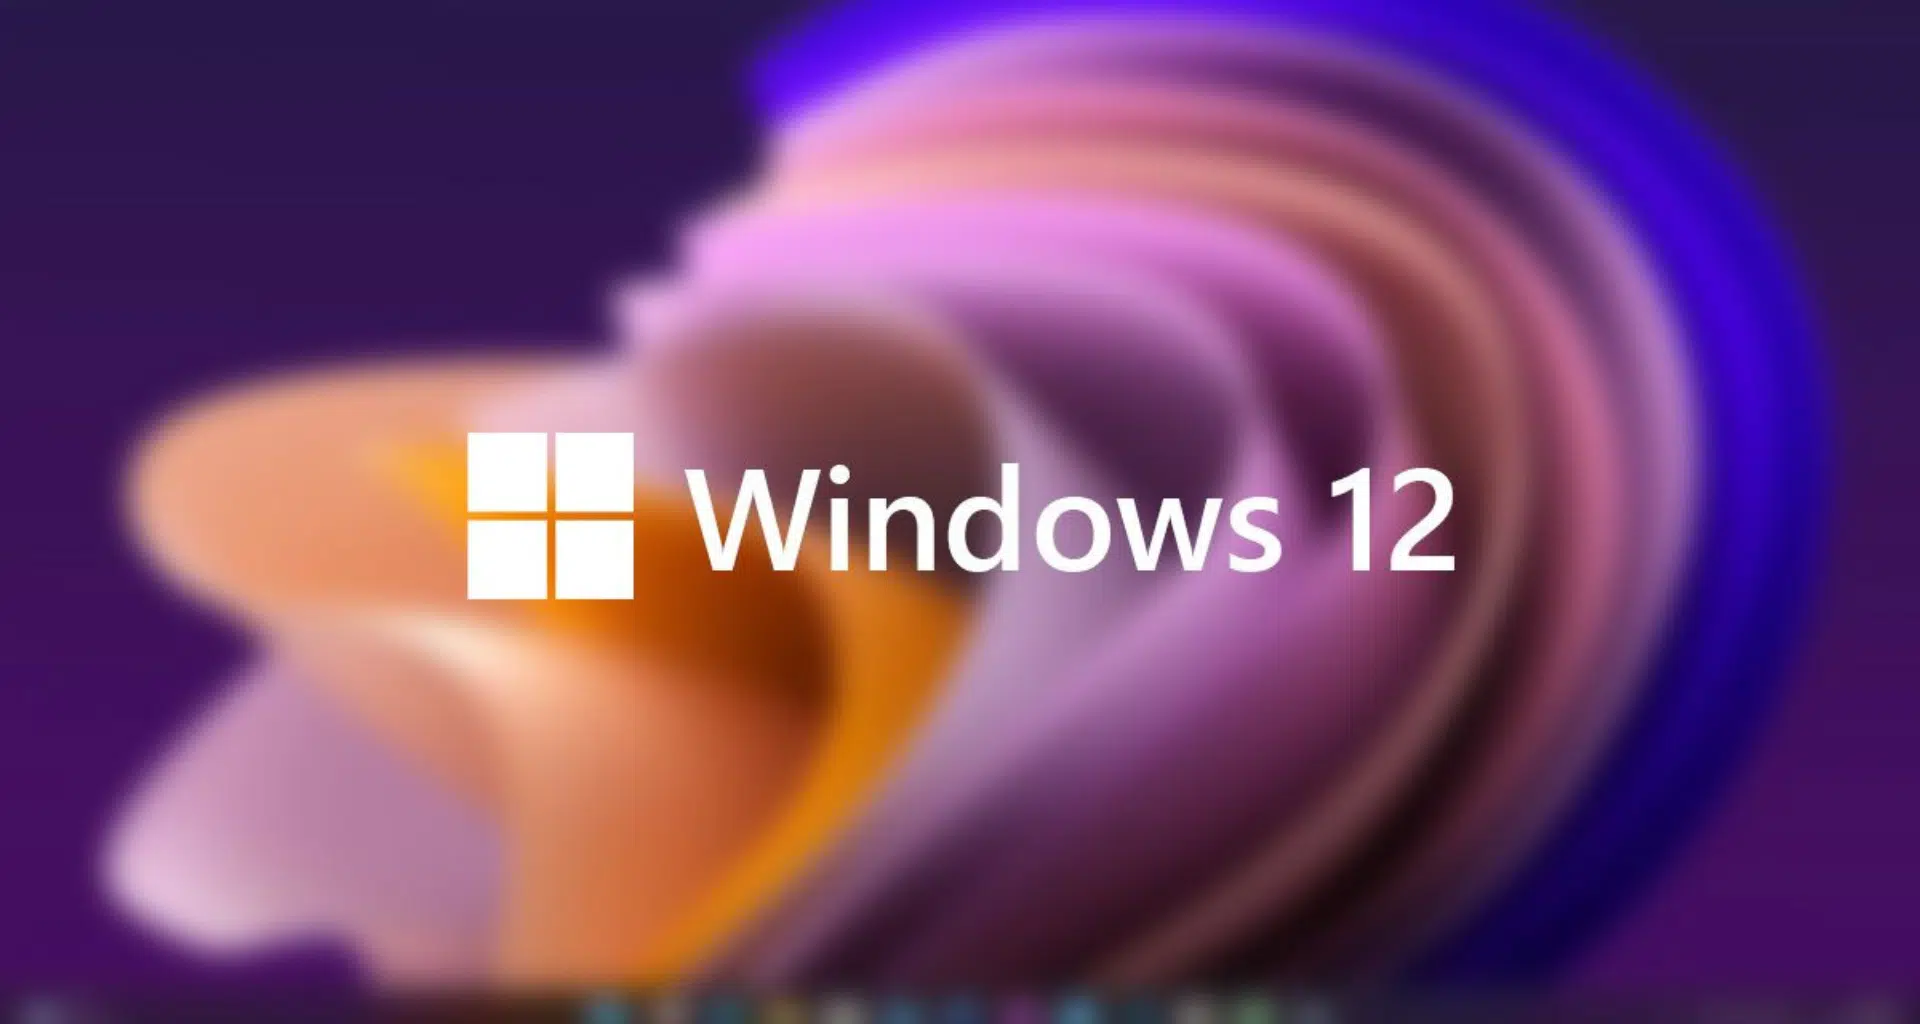 Quando o windows 12 deve ser lançado?. Previsto para ser lançado em 2024, o windows 12 deve trazer mudanças no design e principalmente na barra de tarefas. Veja o que já se sabe